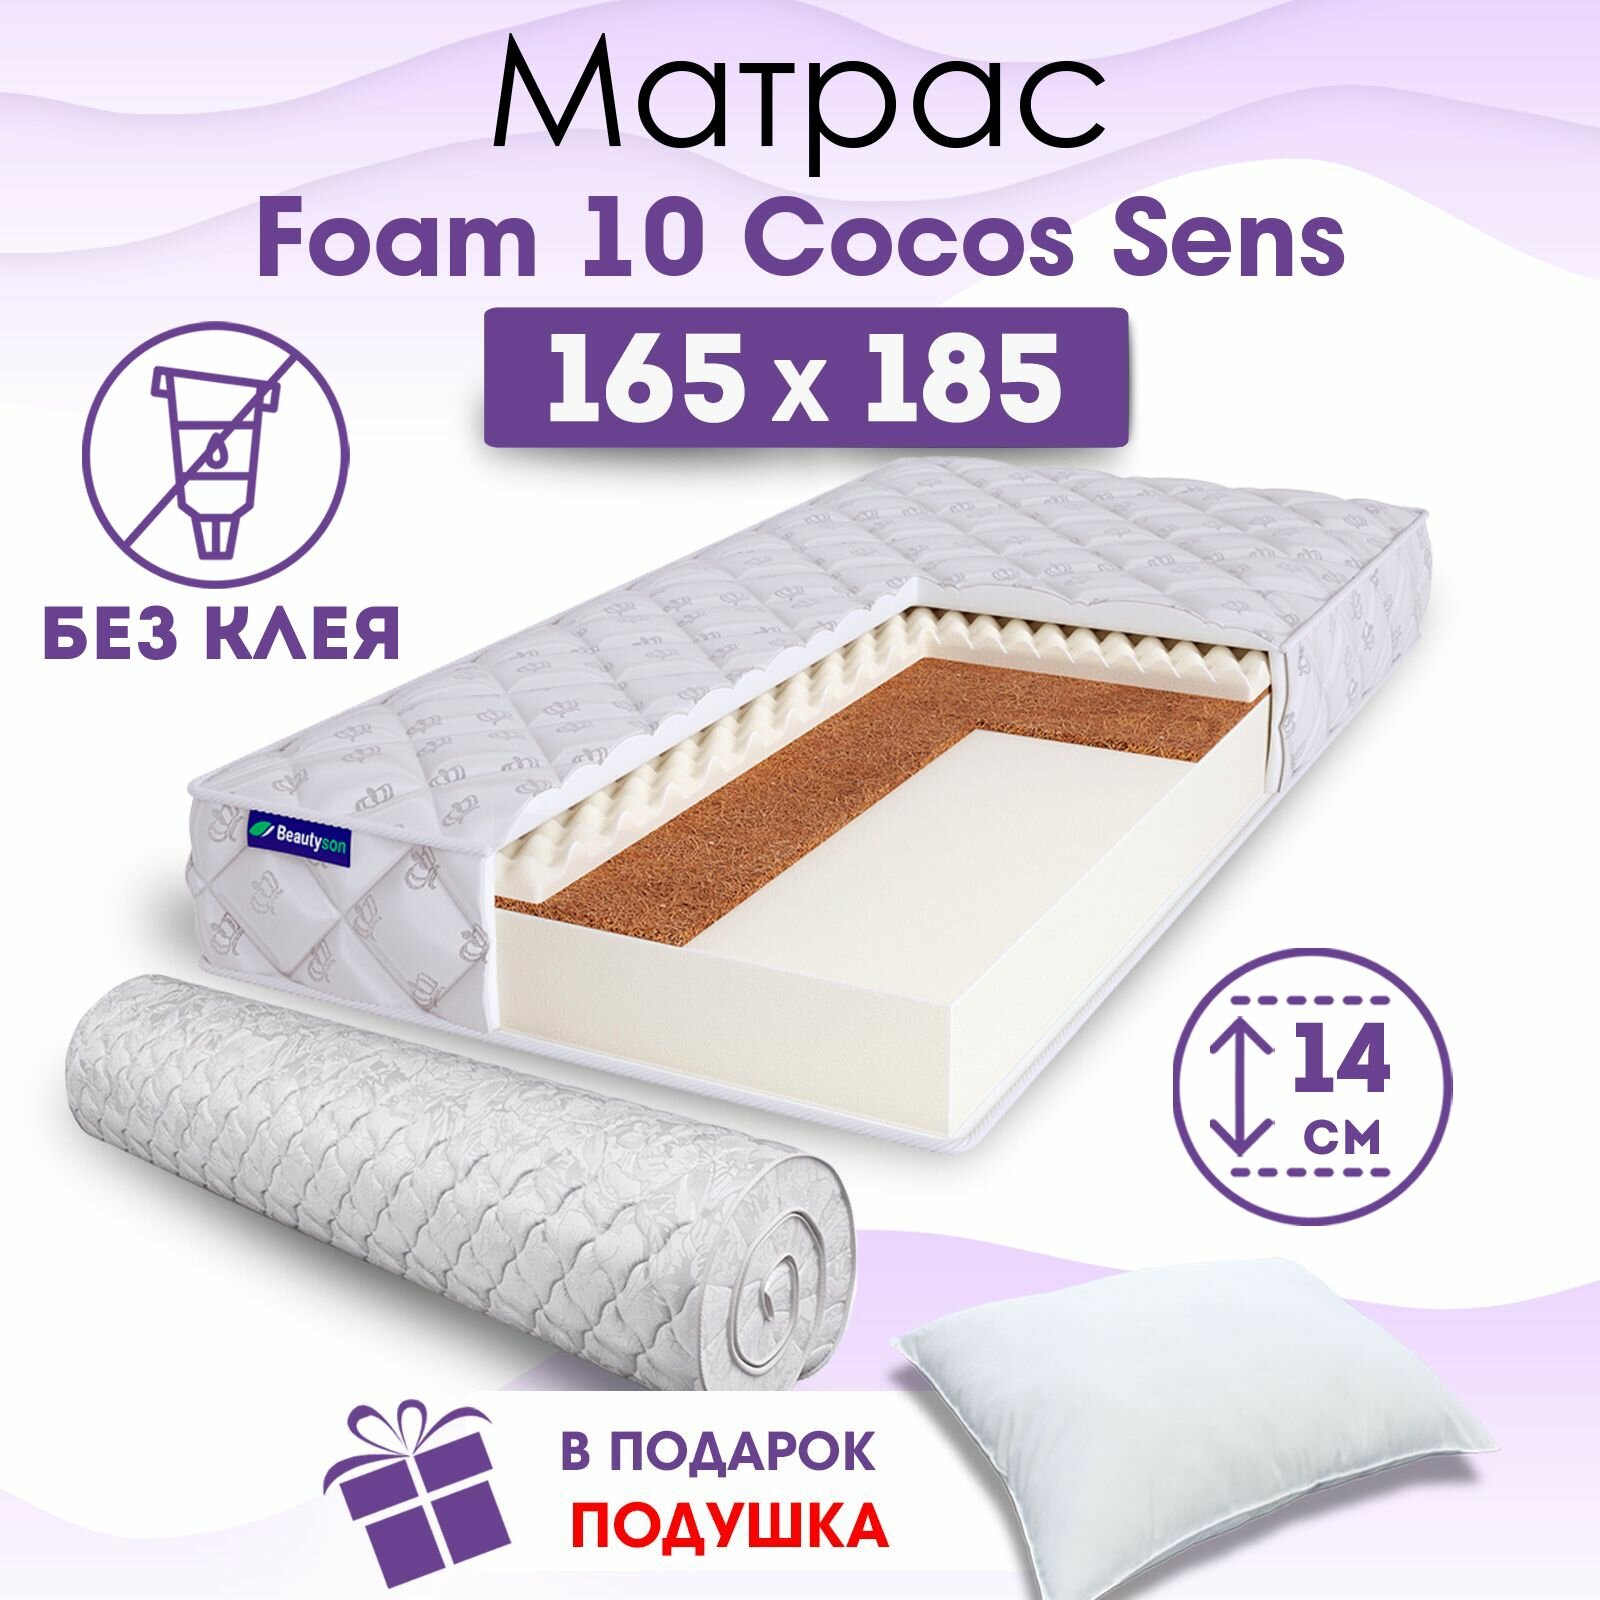 Ортопедический матрас Beautyson Foam 10 Cocos Sens без клея, 165х185, 14 см, беспружинный, двухспальный, на кровать, для дивана, умеренно мягкий